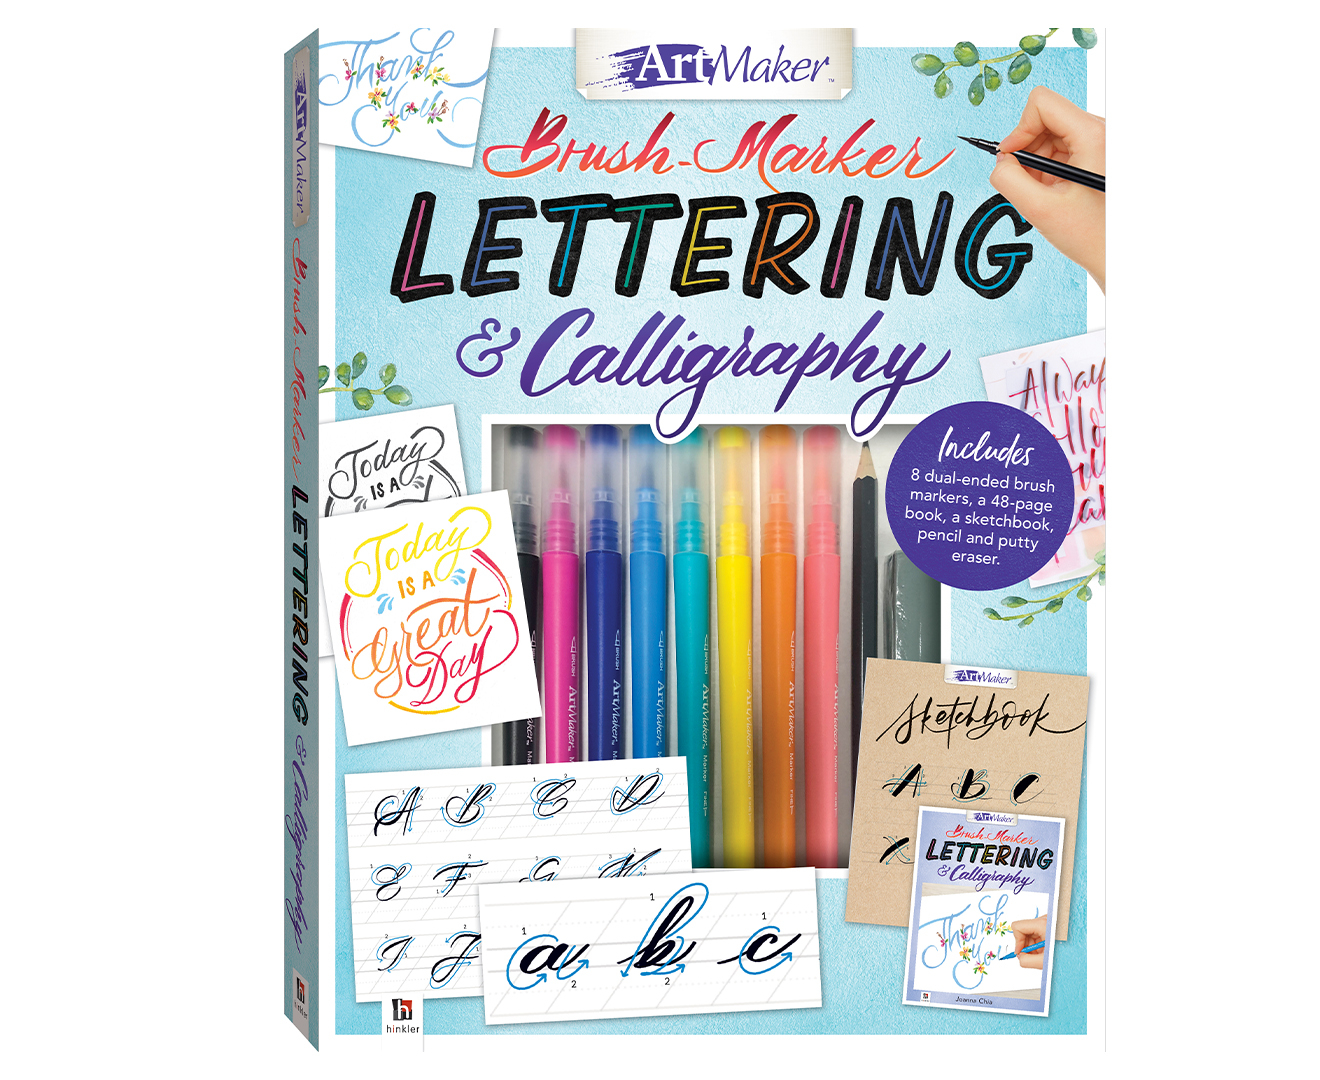 Art Marker Brush-Marker Lettering & Calligraphy Kit